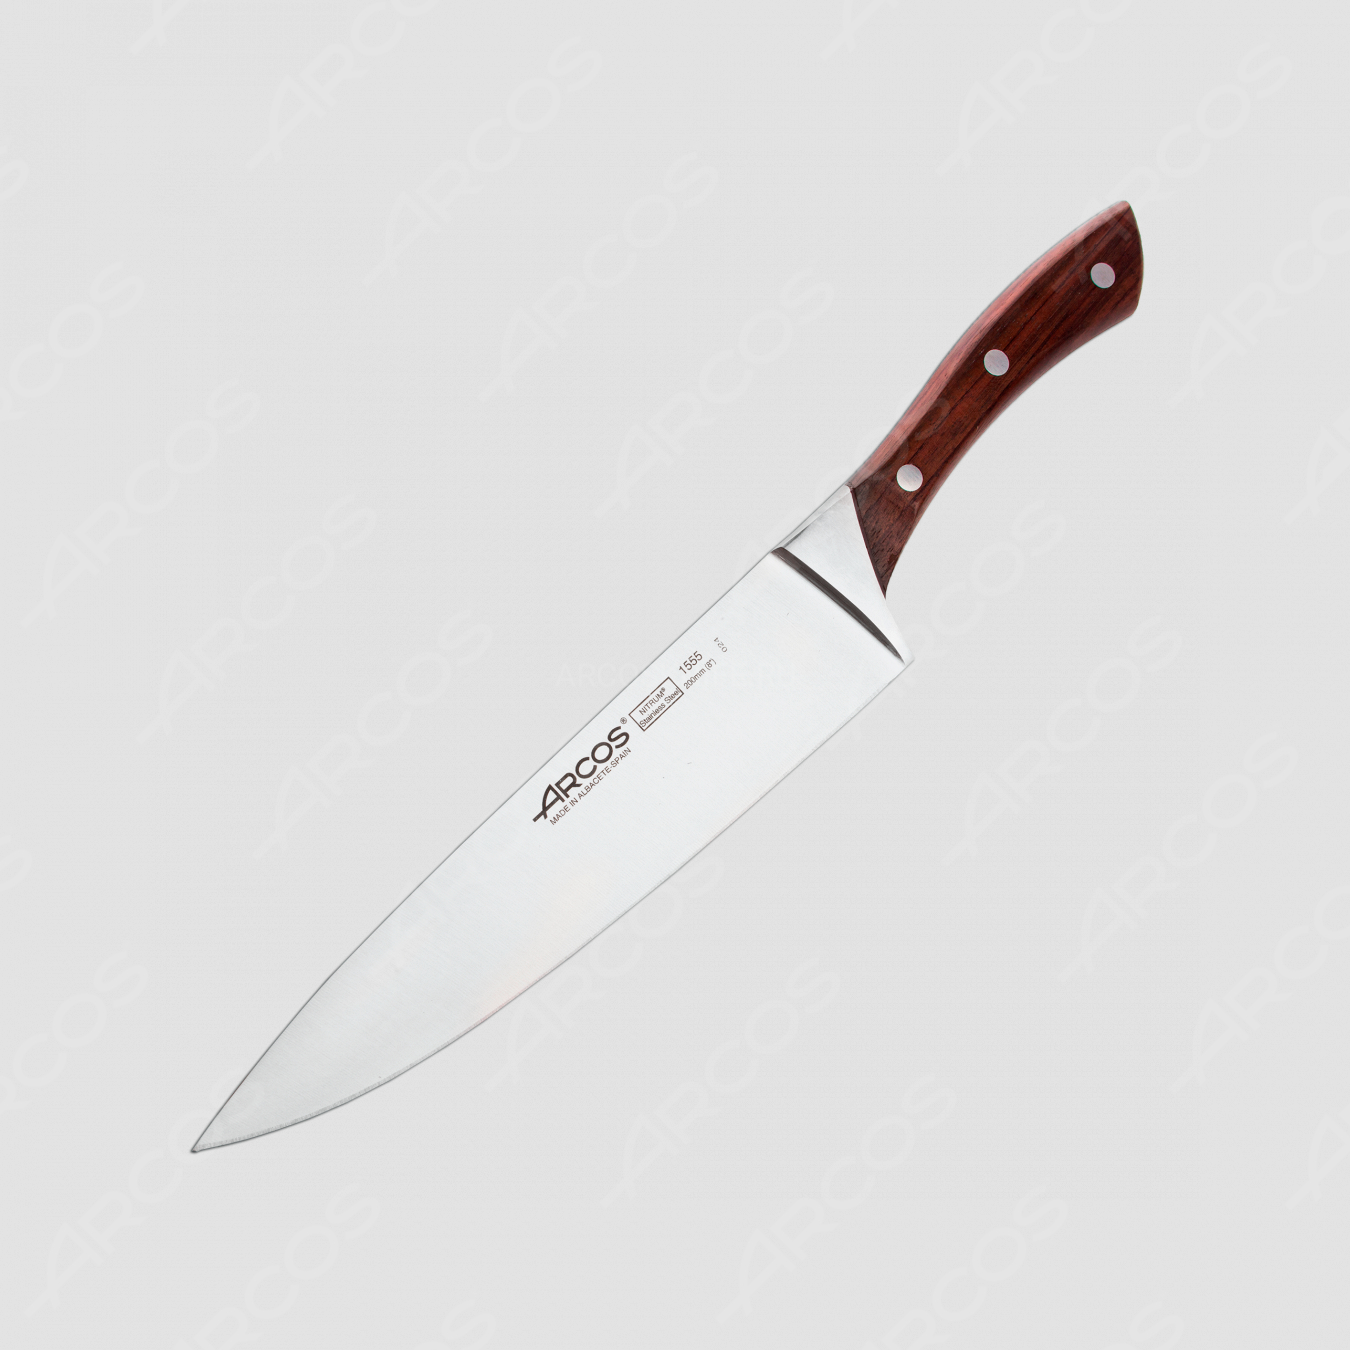 Профессиональный поварской кухонный нож 20 см, серия Natura, ARCOS, Испания